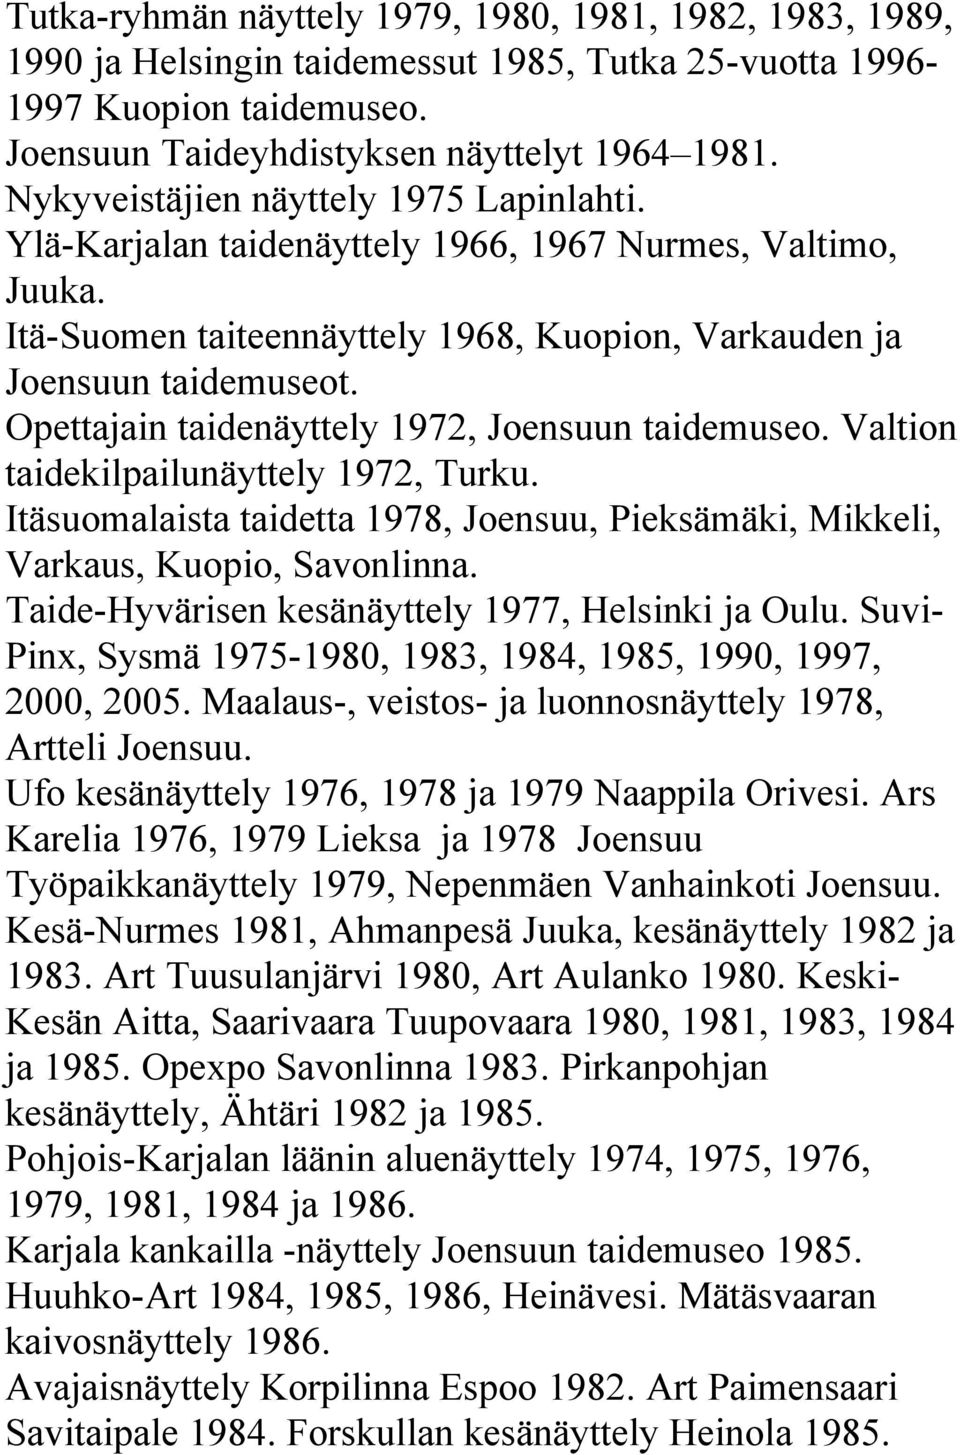 Opettajain taidenäyttely 1972, Joensuun taidemuseo. Valtion taidekilpailunäyttely 1972, Turku. Itäsuomalaista taidetta 1978, Joensuu, Pieksämäki, Mikkeli, Varkaus, Kuopio, Savonlinna.